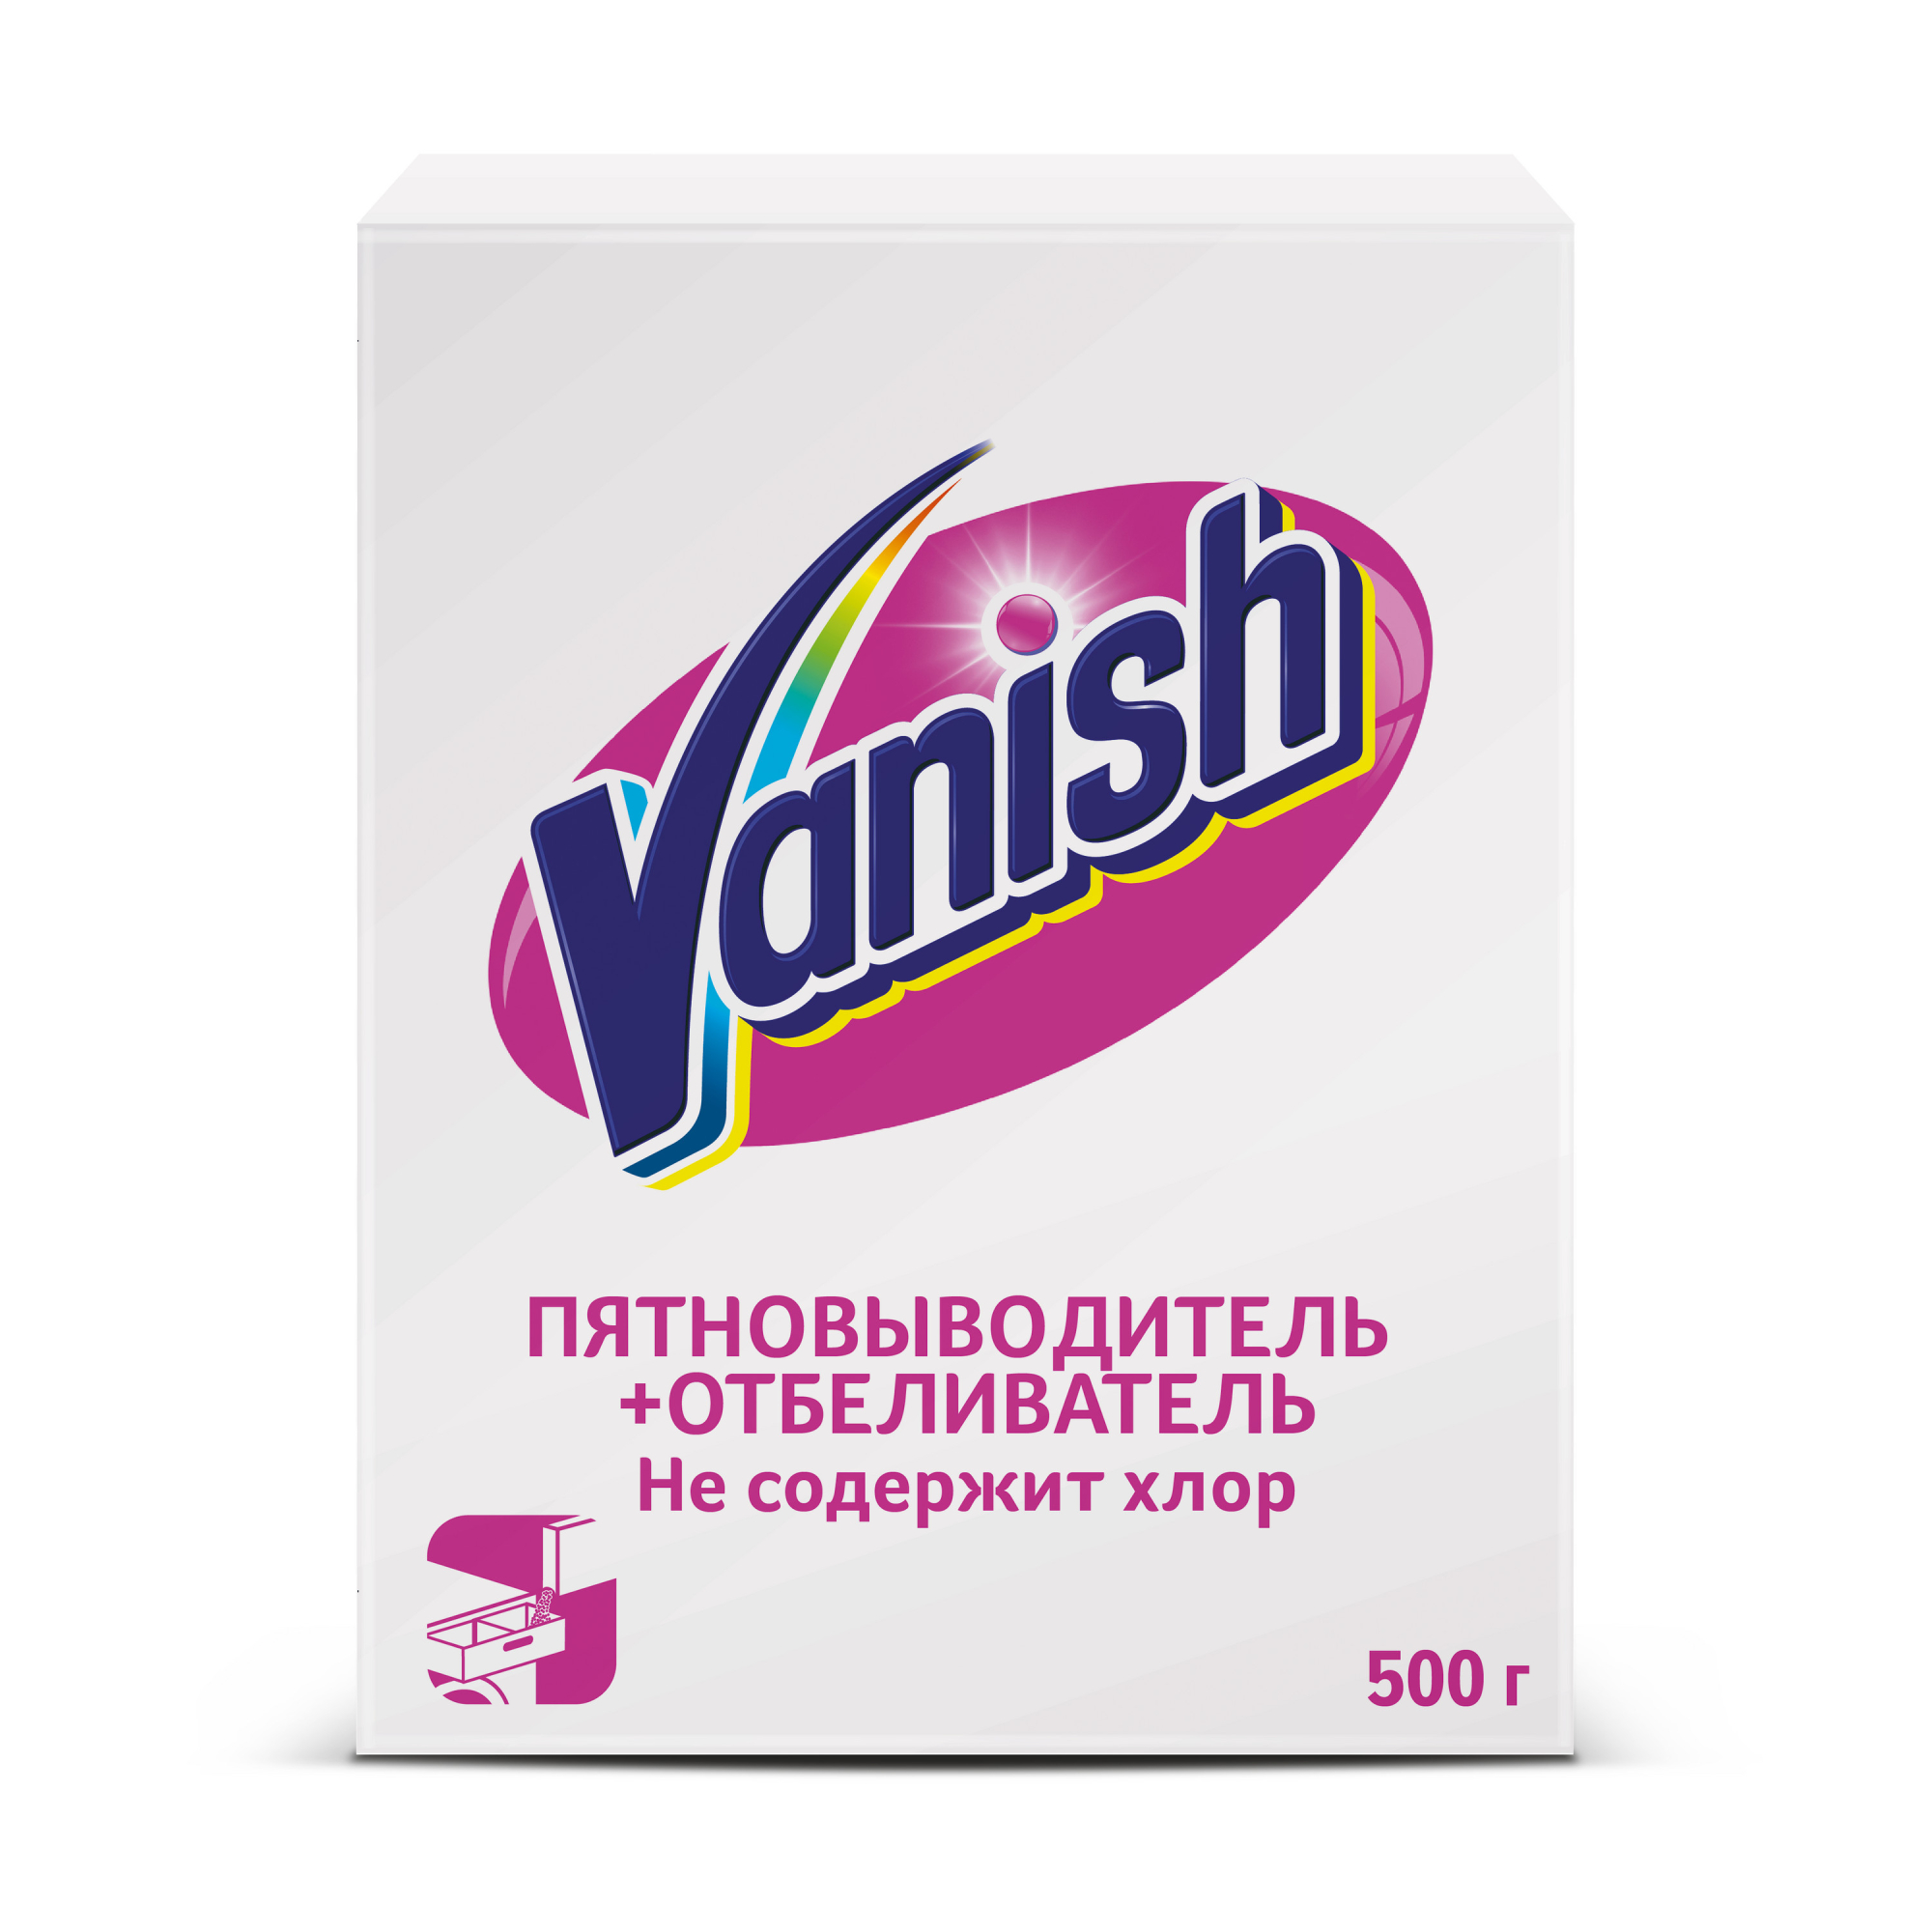 Пятновыводитель Vanish отбеливатель 500 гр yokosun отбеливатель пятновыводитель экспресс эффект 1000